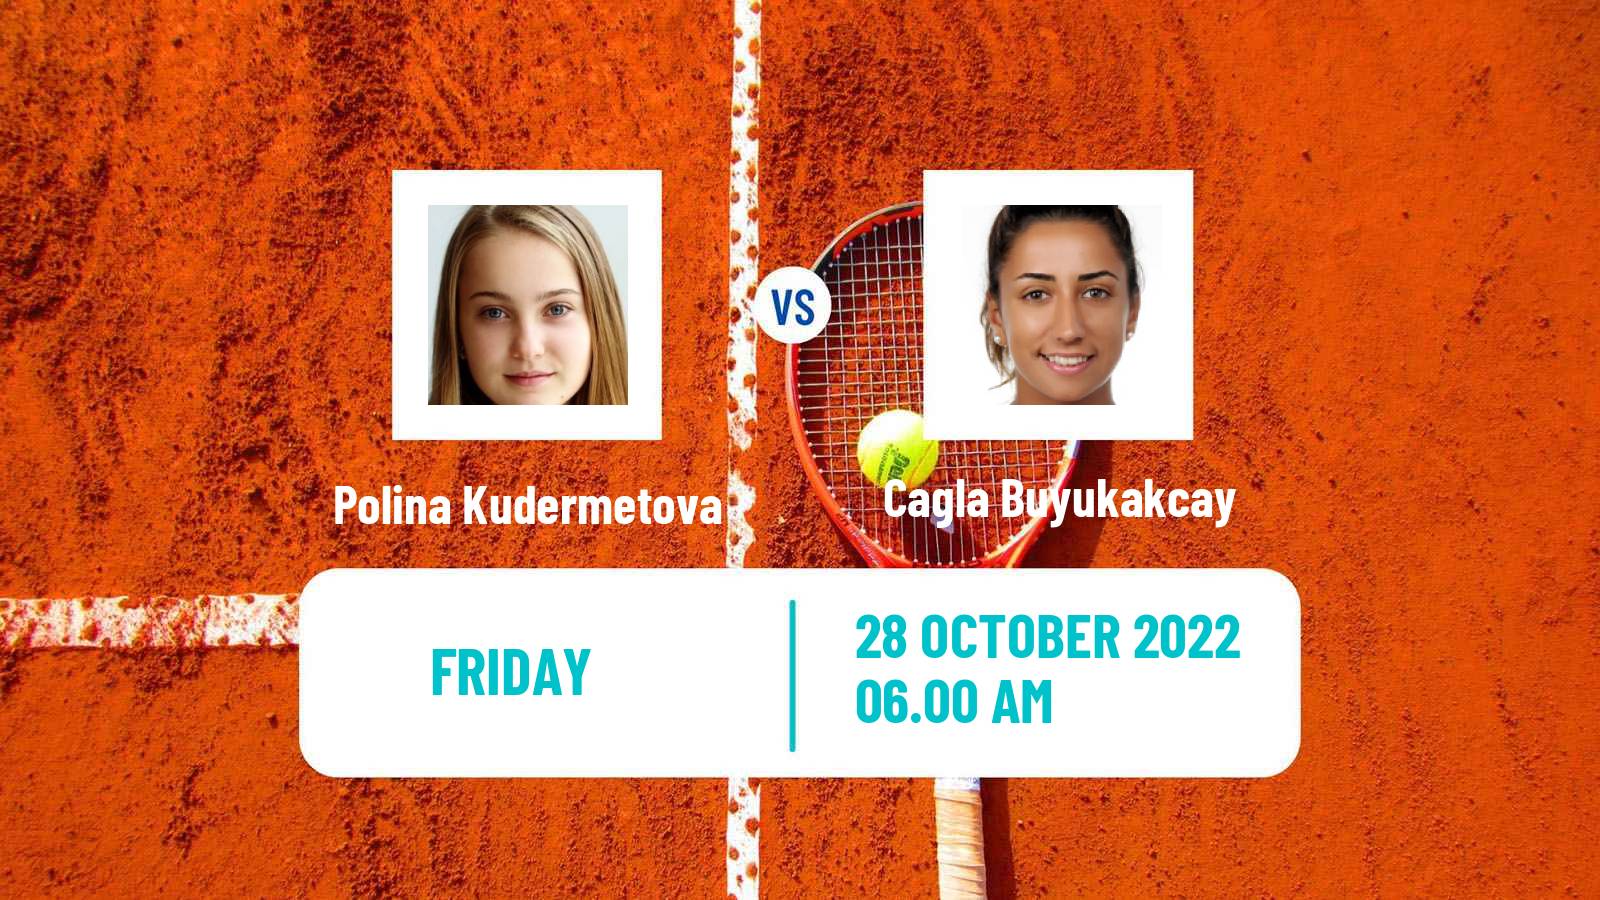 Tennis ITF Tournaments Polina Kudermetova - Cagla Buyukakcay